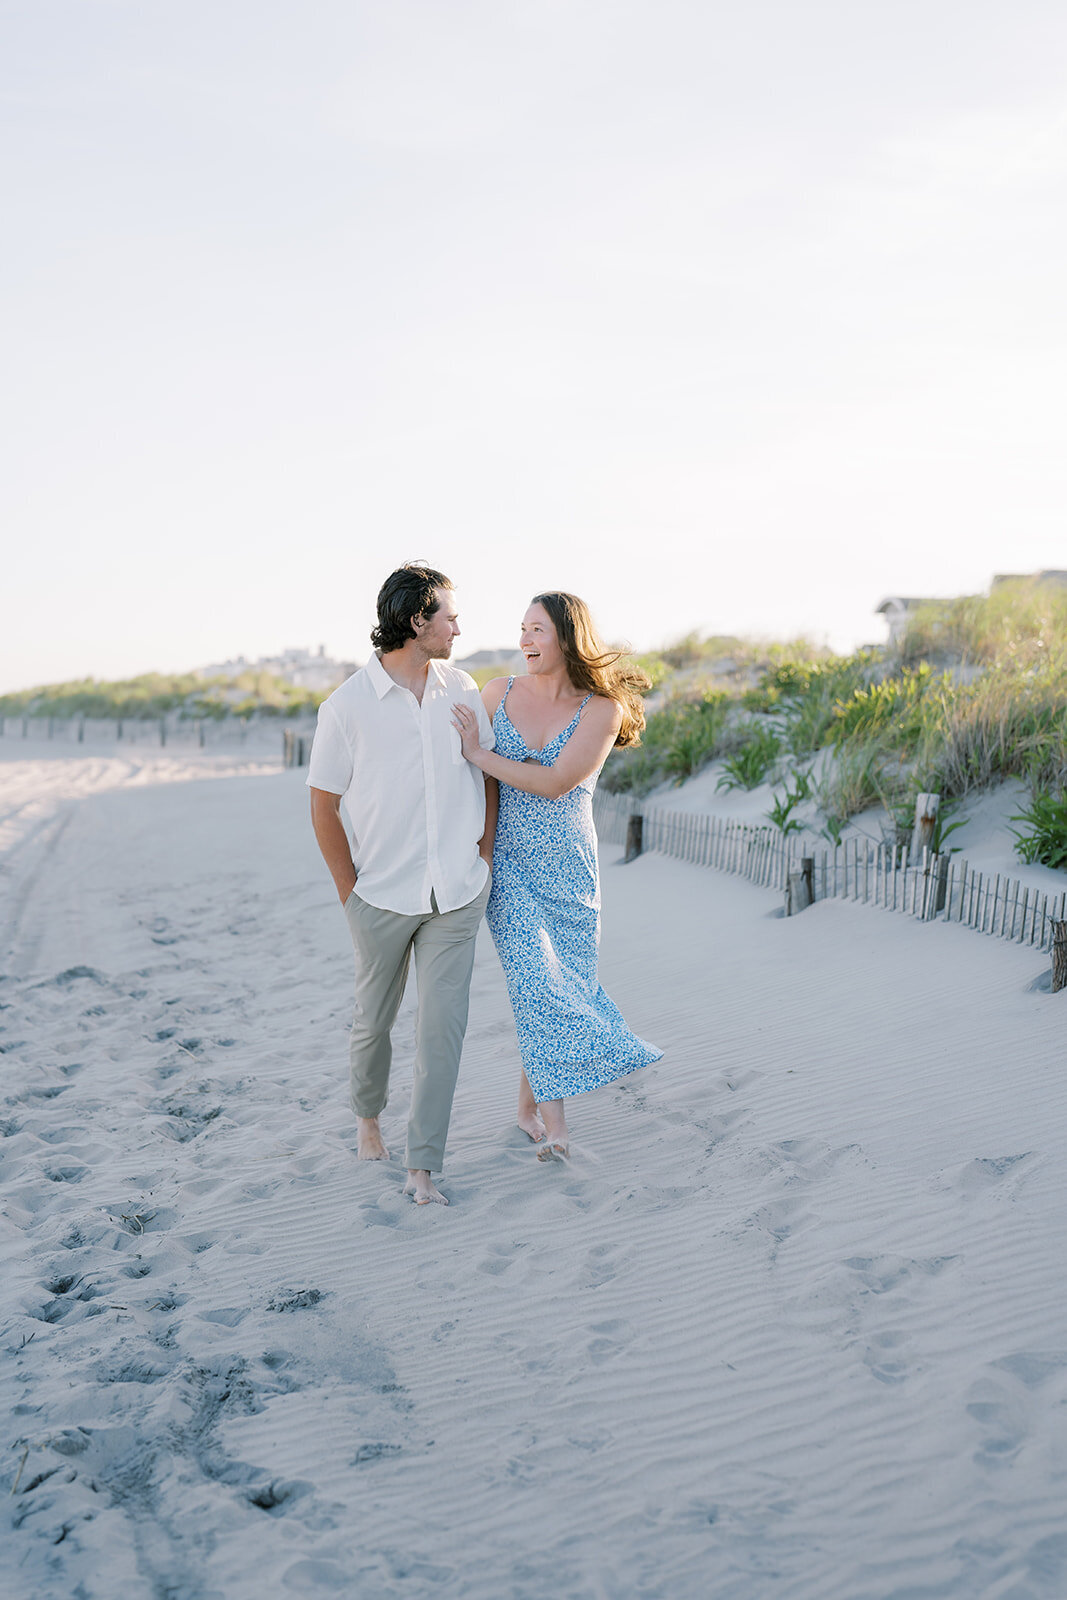 Couple walking on the beach in Longport, NJ